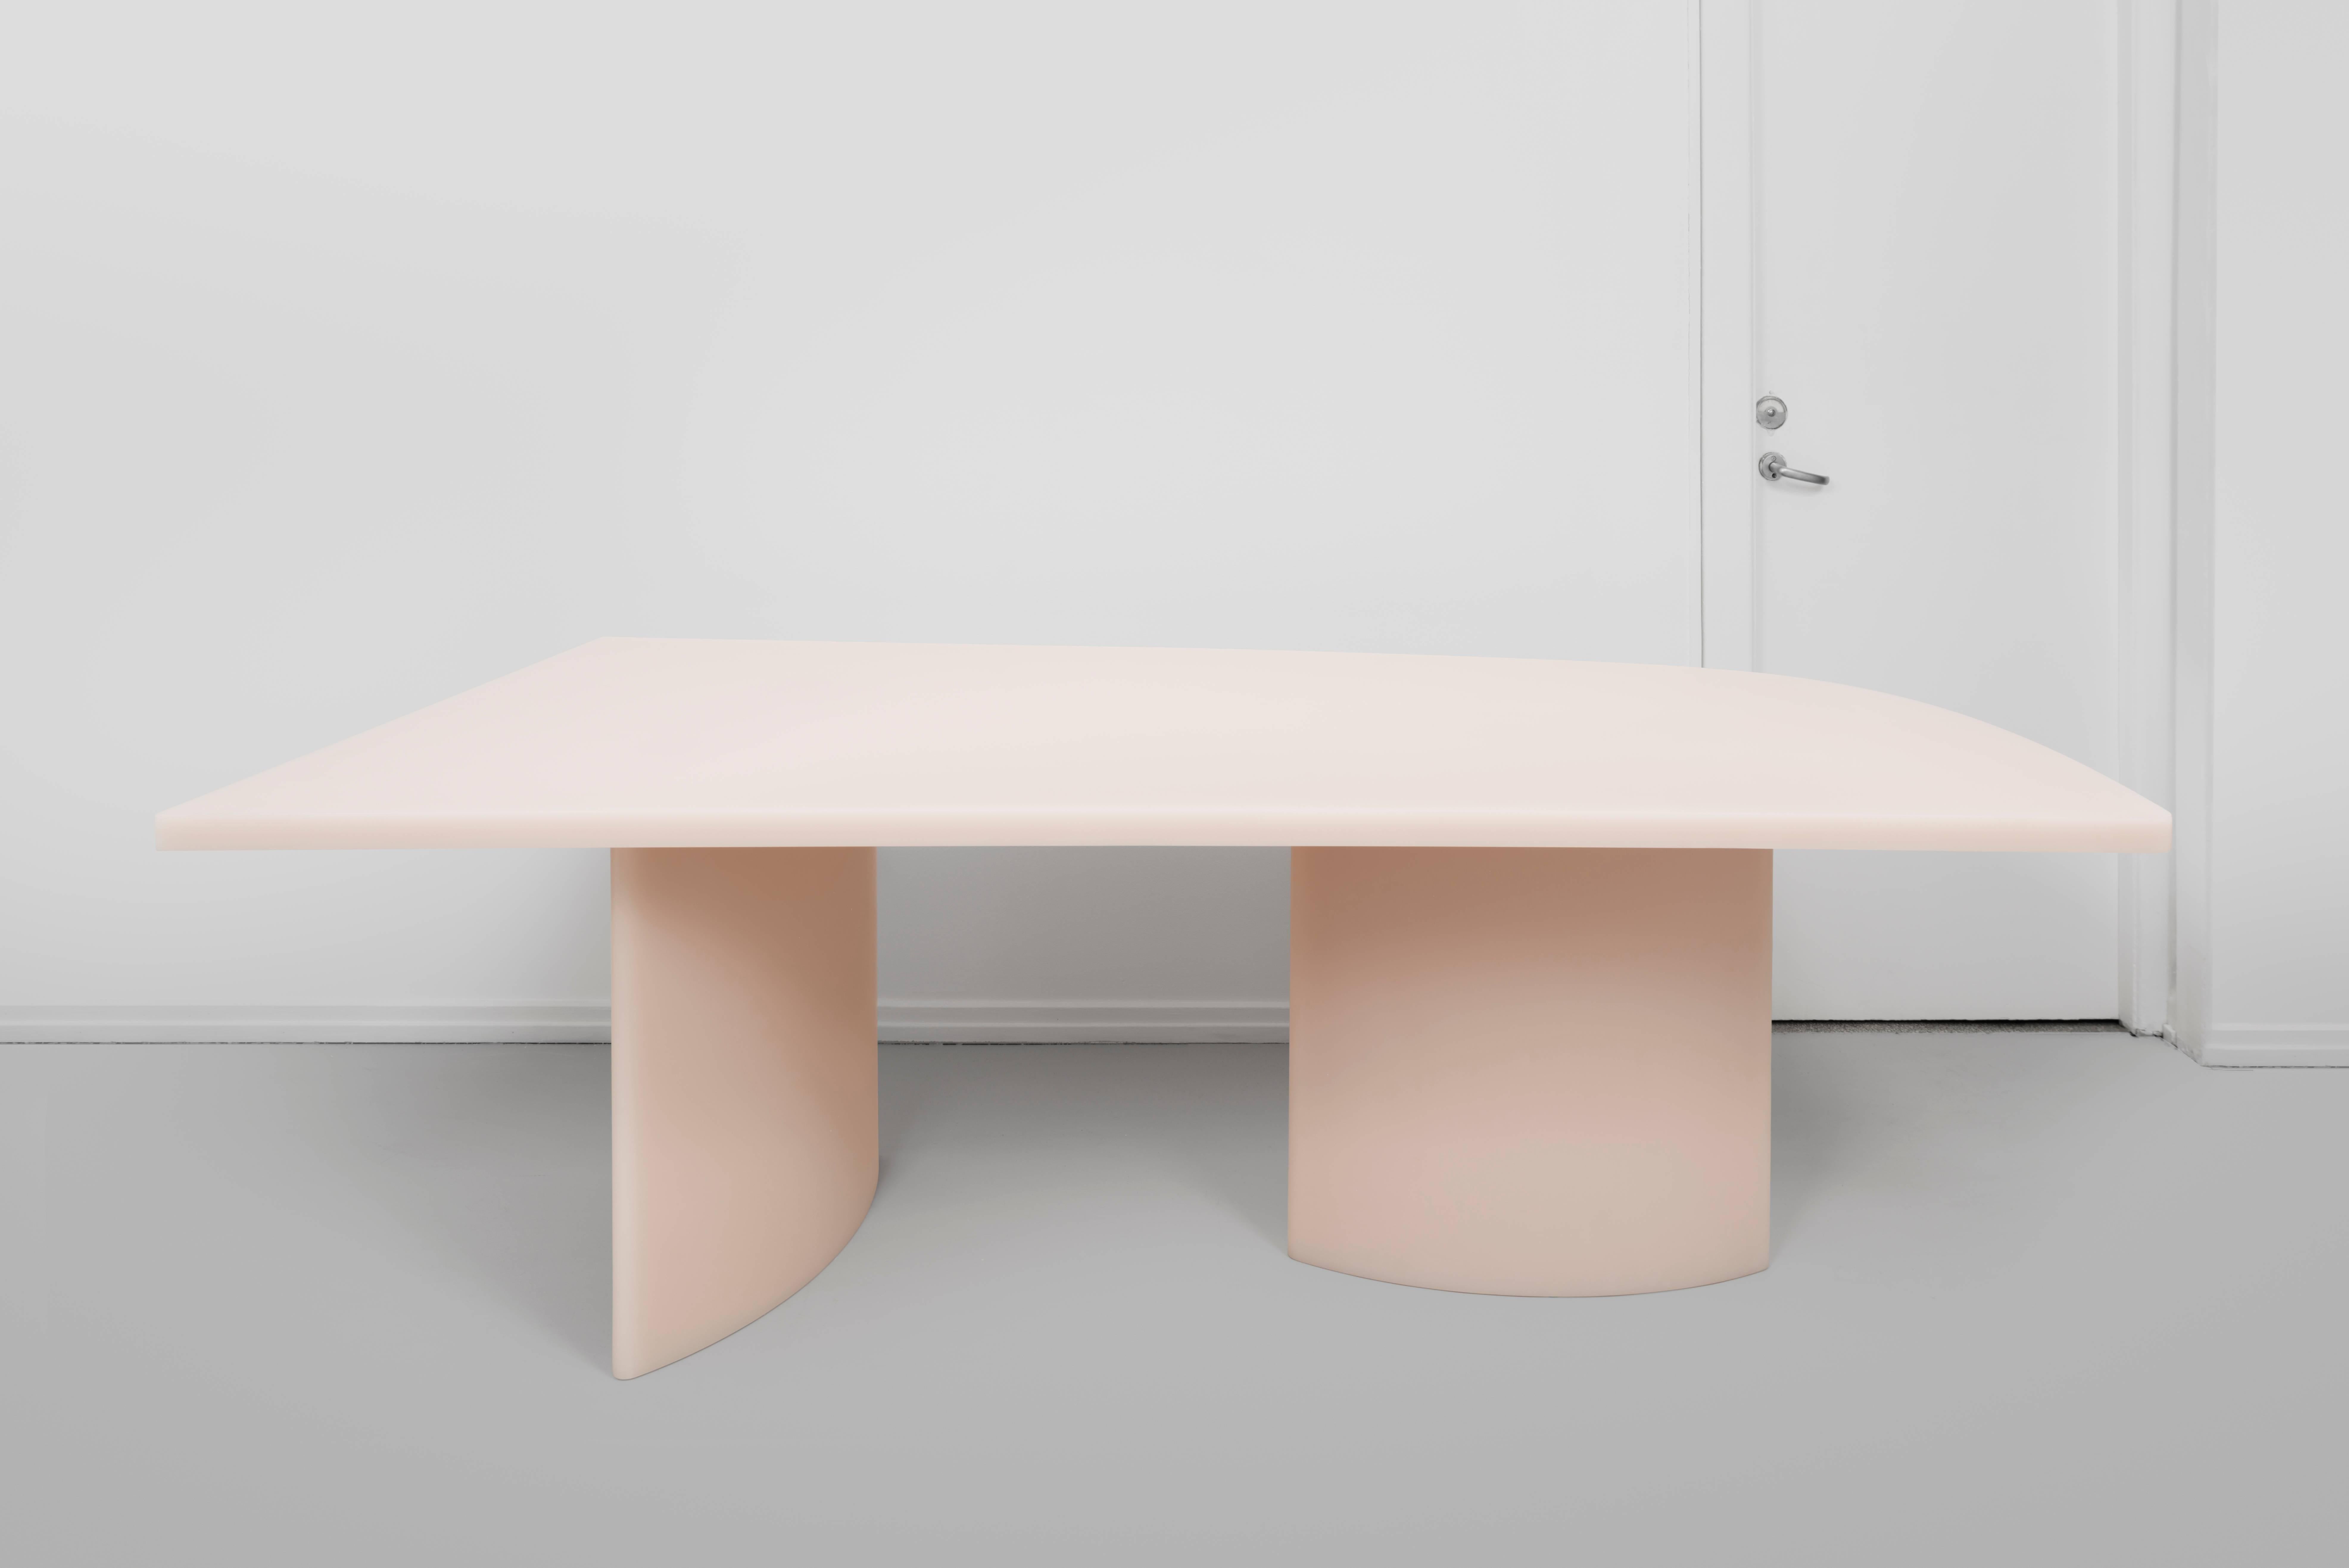 Der neue:: cremefarbene Soap-Tisch von Sabine Marcelis:: der erstmals auf der Nomad St. Moritz 2018 vorgestellt wurde:: ist ein dynamisches Tischset:: das aus ihrem charakteristischen Harz mit einer seifenmatten Oberfläche besteht und auf die